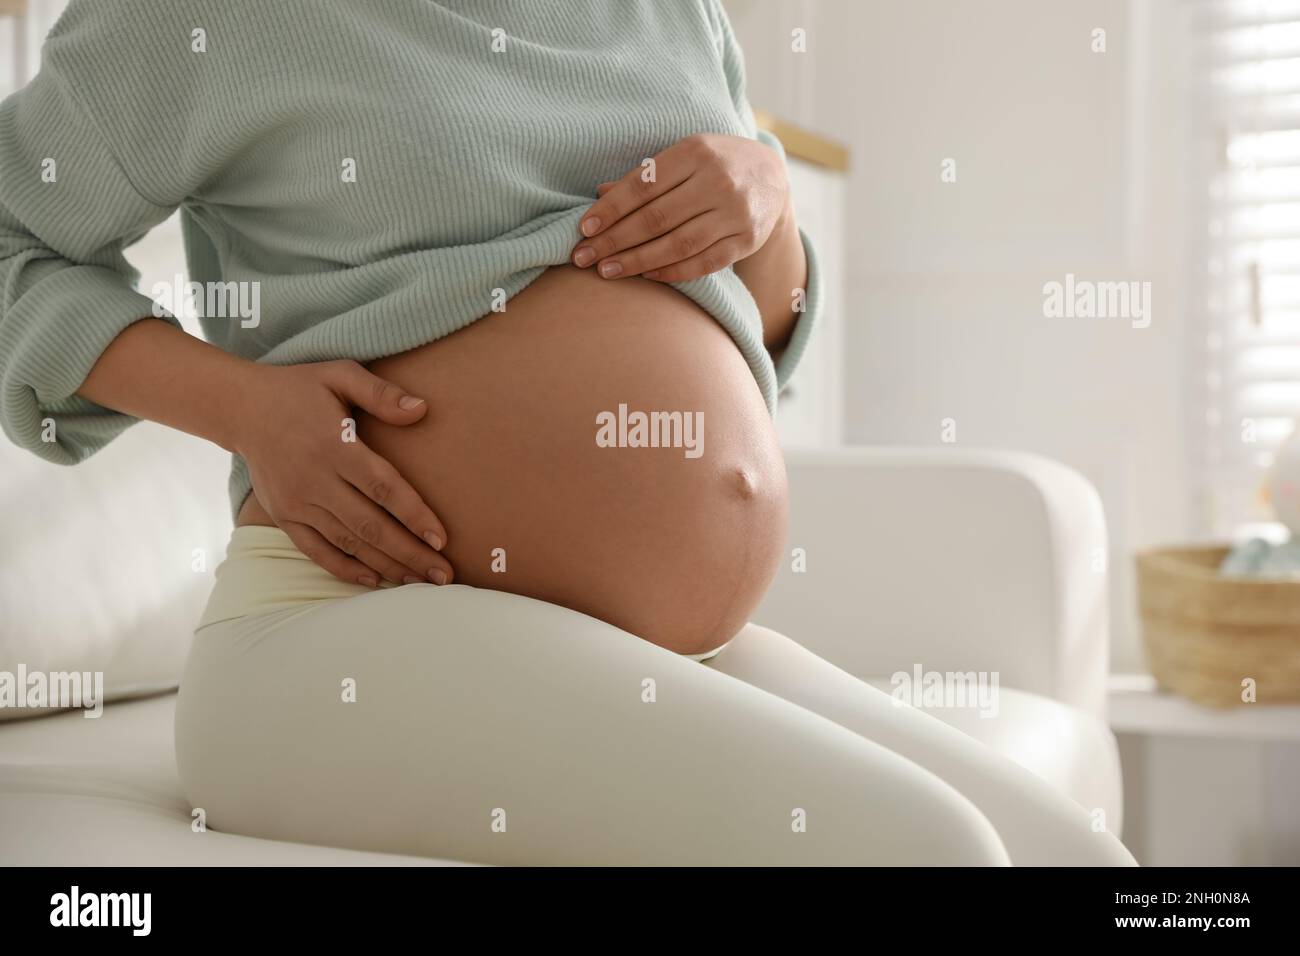 Pregnant woman at home, closeup. Choosing baby name Stock Photo